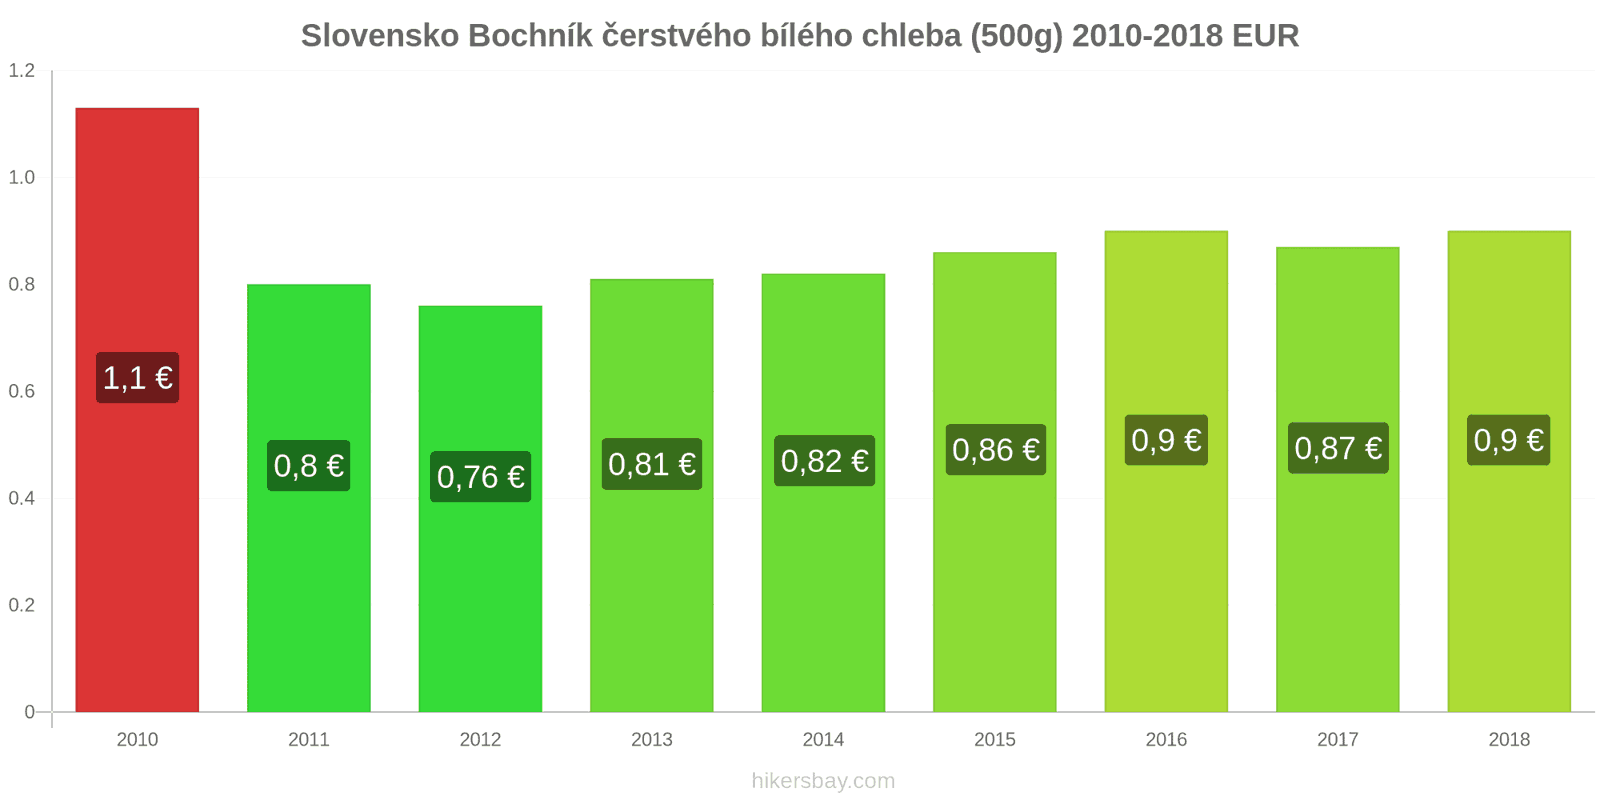 Slovensko změny cen Bochník čerstvého bílého chleba (500g) hikersbay.com